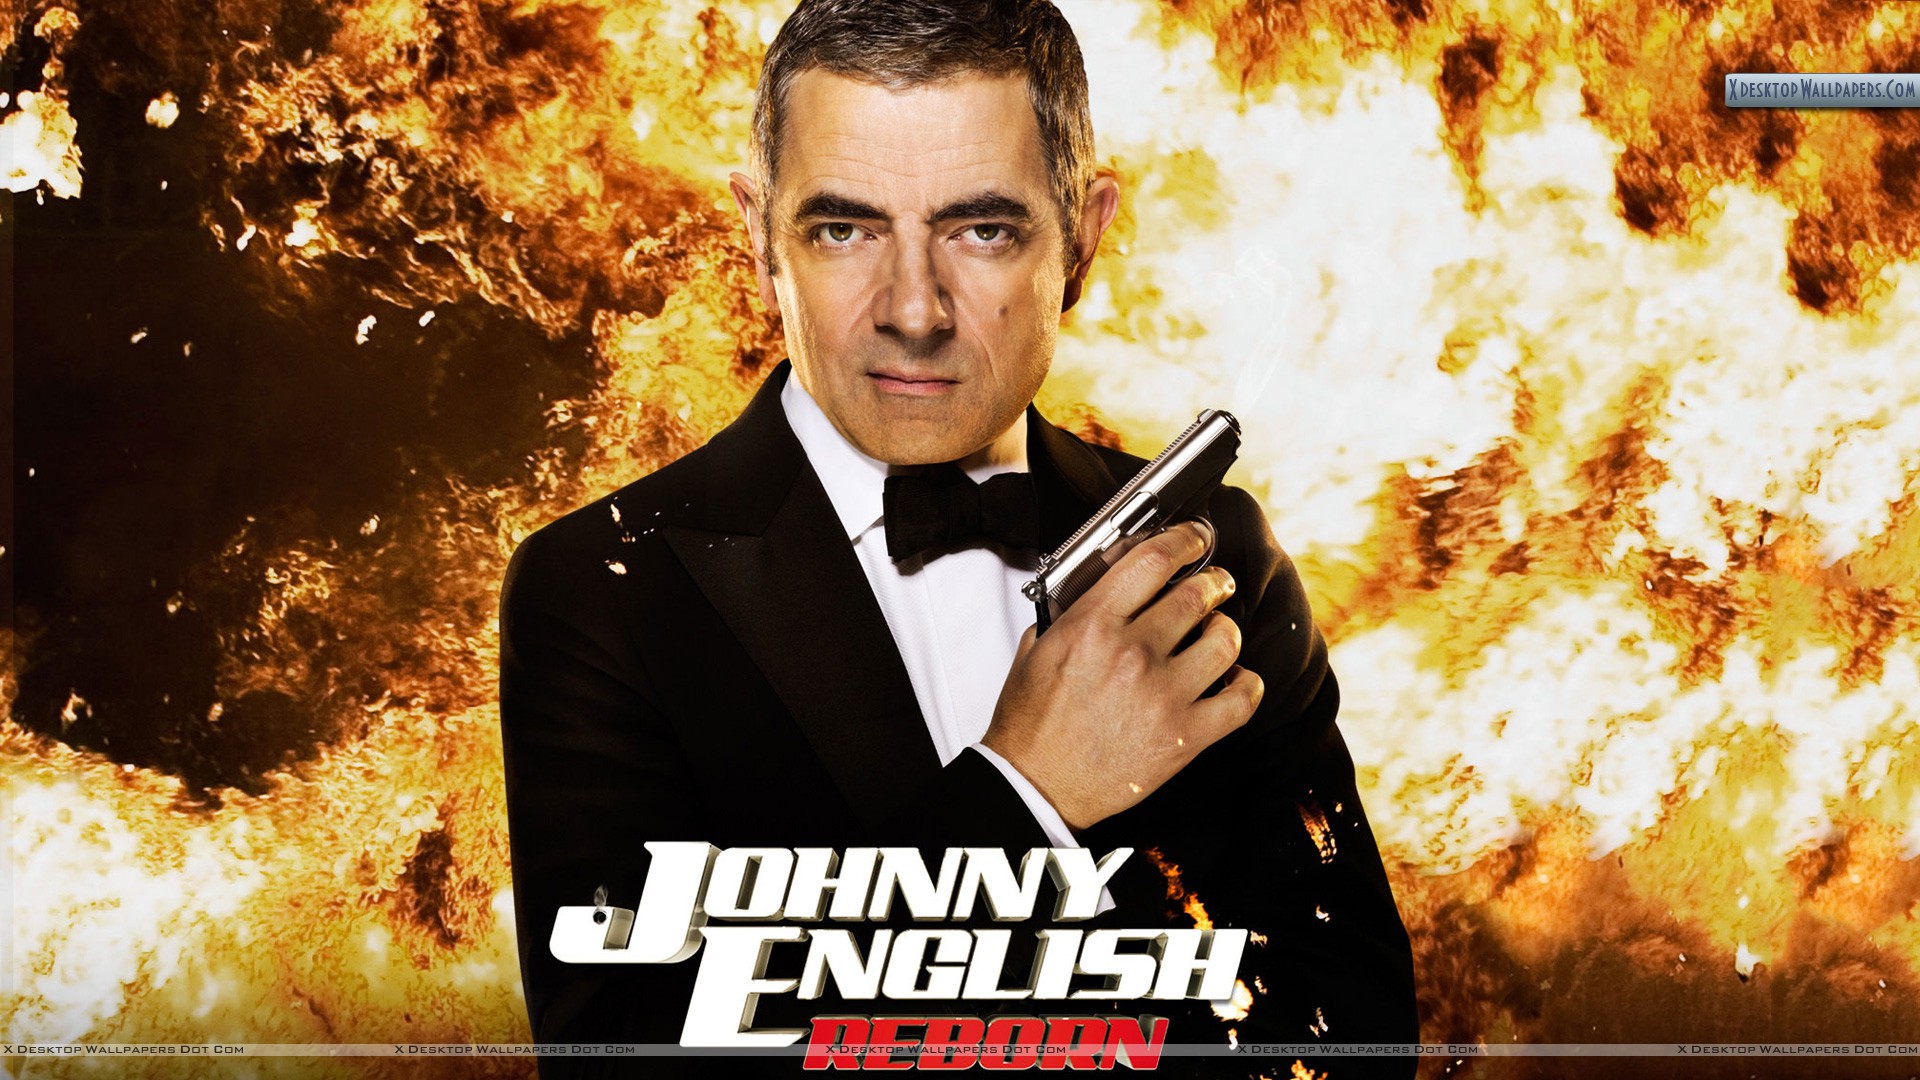 Johnny English Reborn (2011) Tamil. johnny english reborn tamilyogi. 